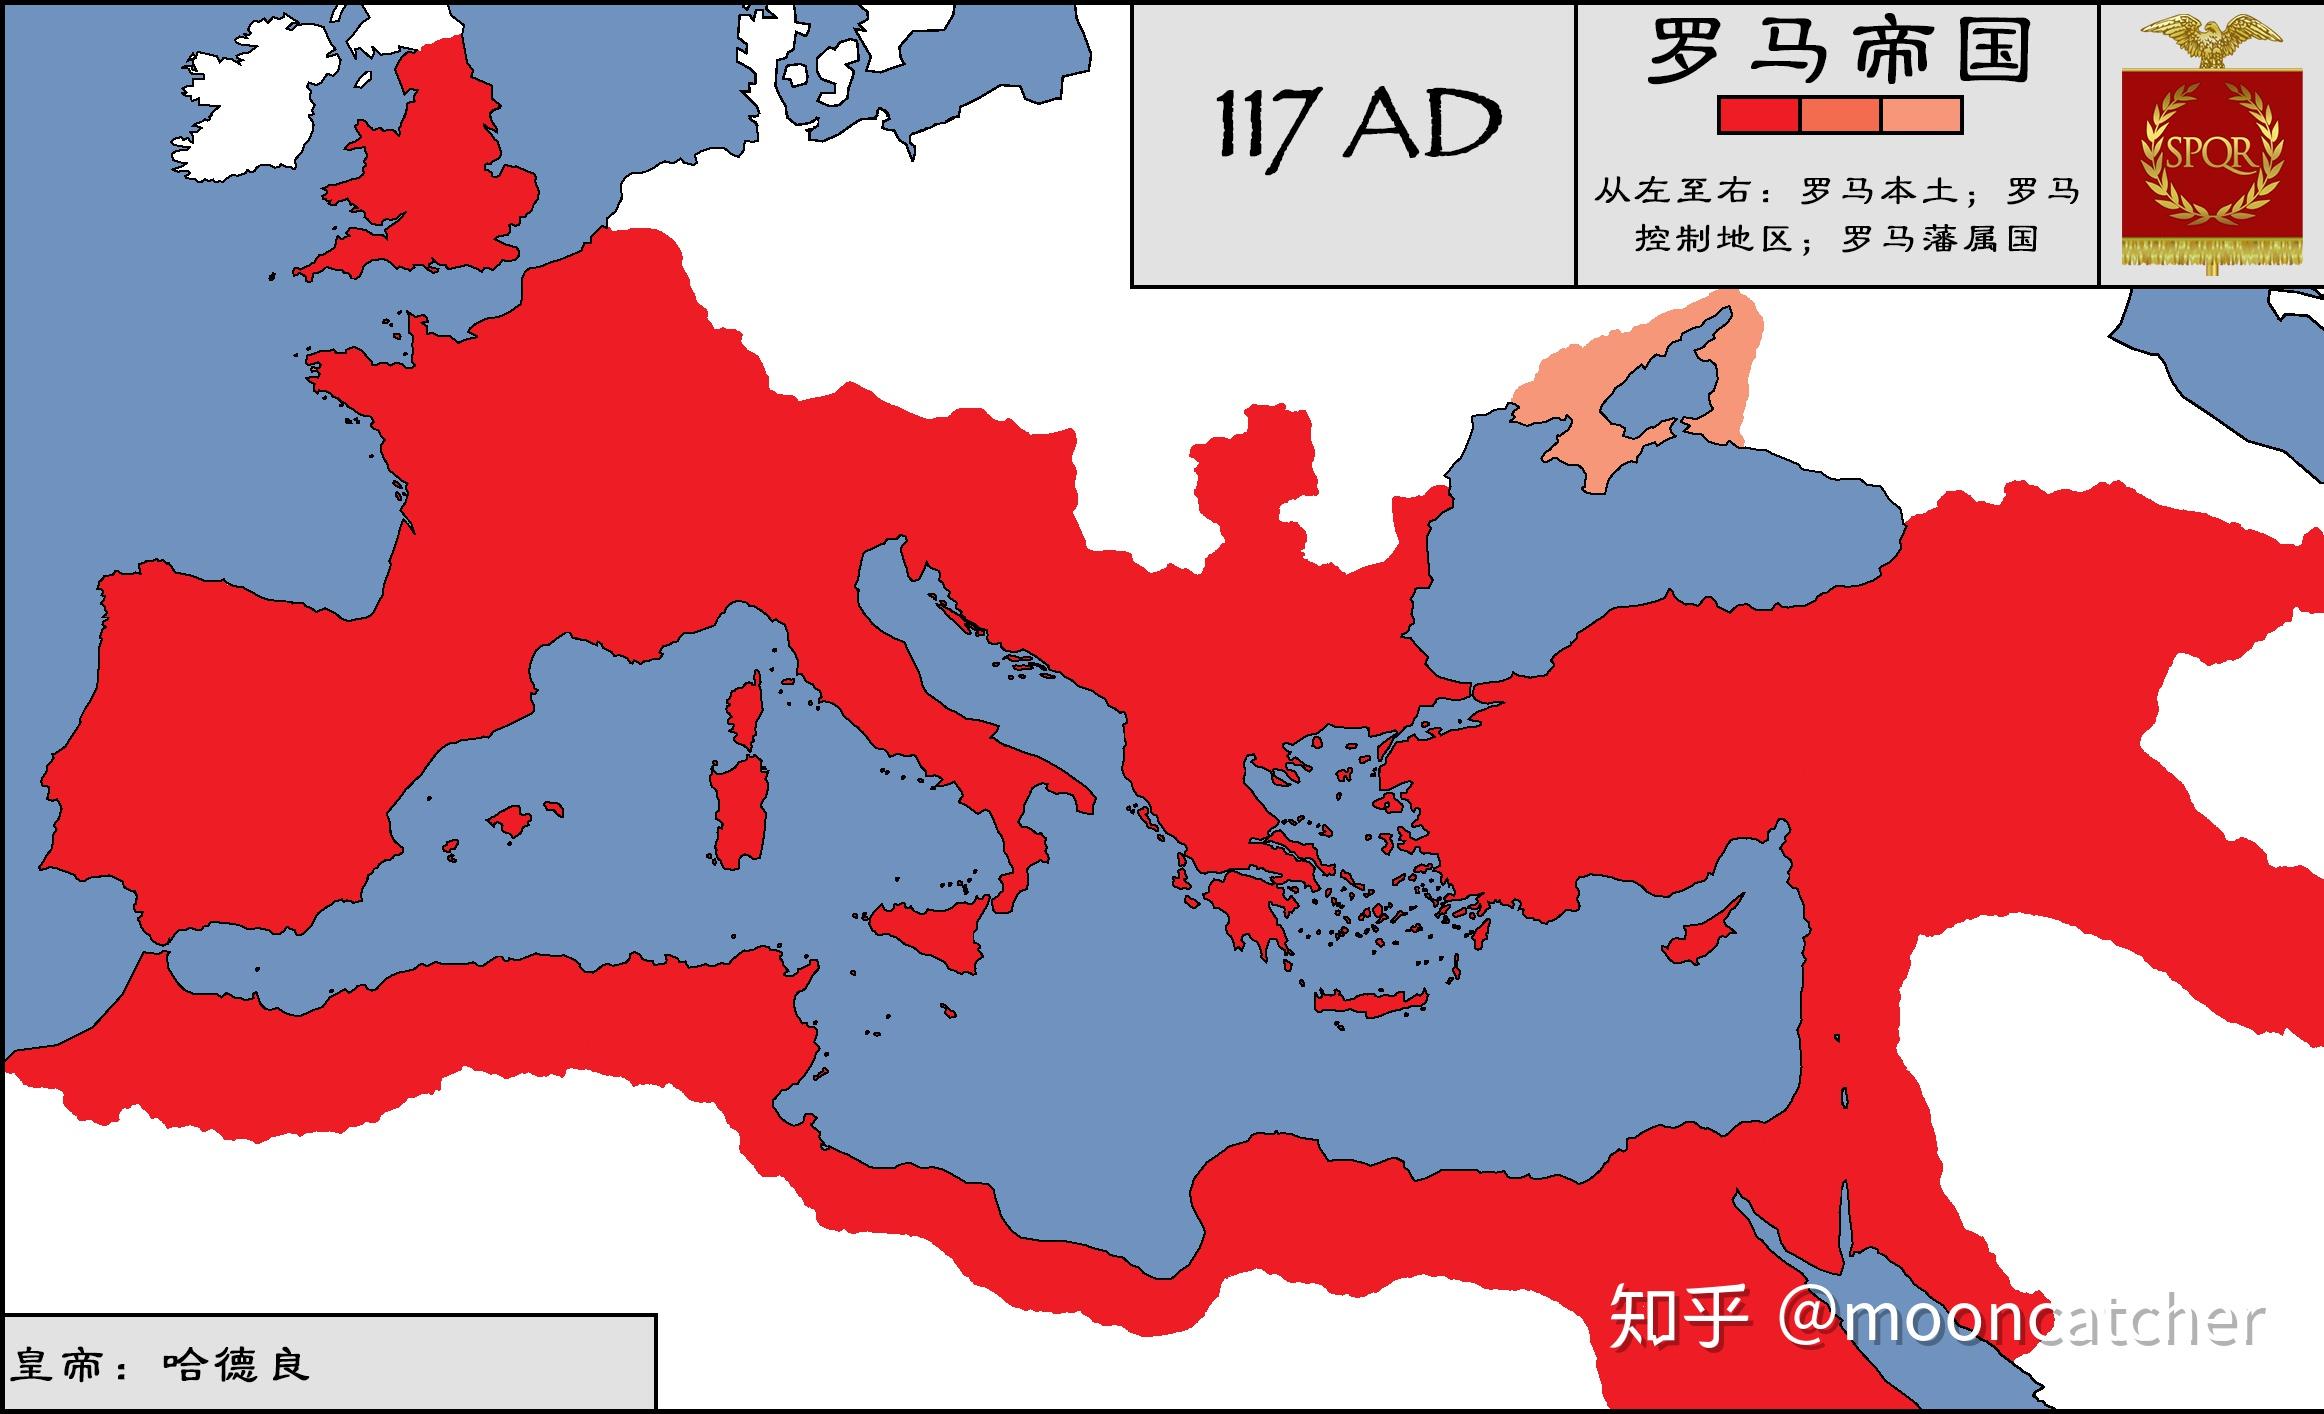 公元117年的罗马帝国;图拉真的一系列征服将达契亚,亚美尼亚和